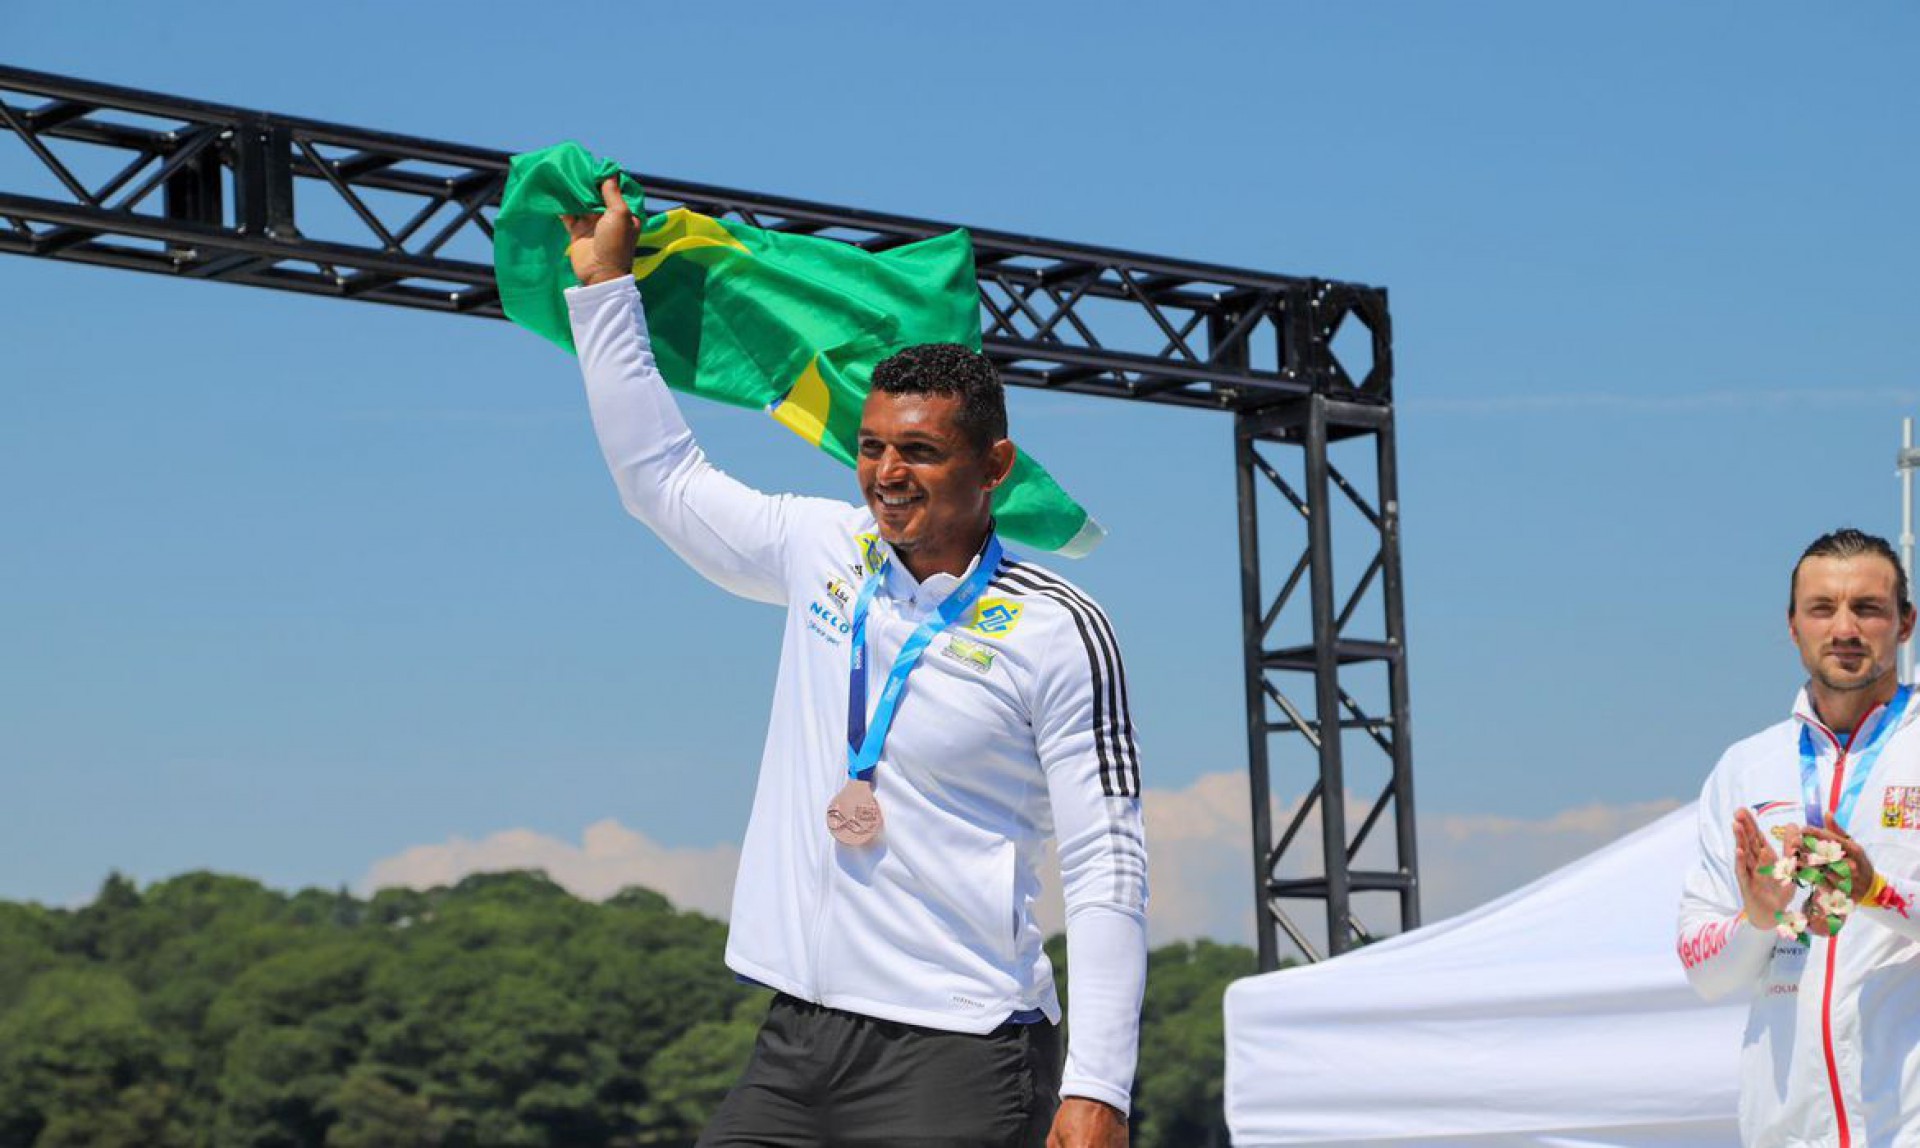 Isaquias Queiroz é campeão mundial no C1 500 metros no Canadá (Foto: Fábio Canhete/CBCa/Divulgação)